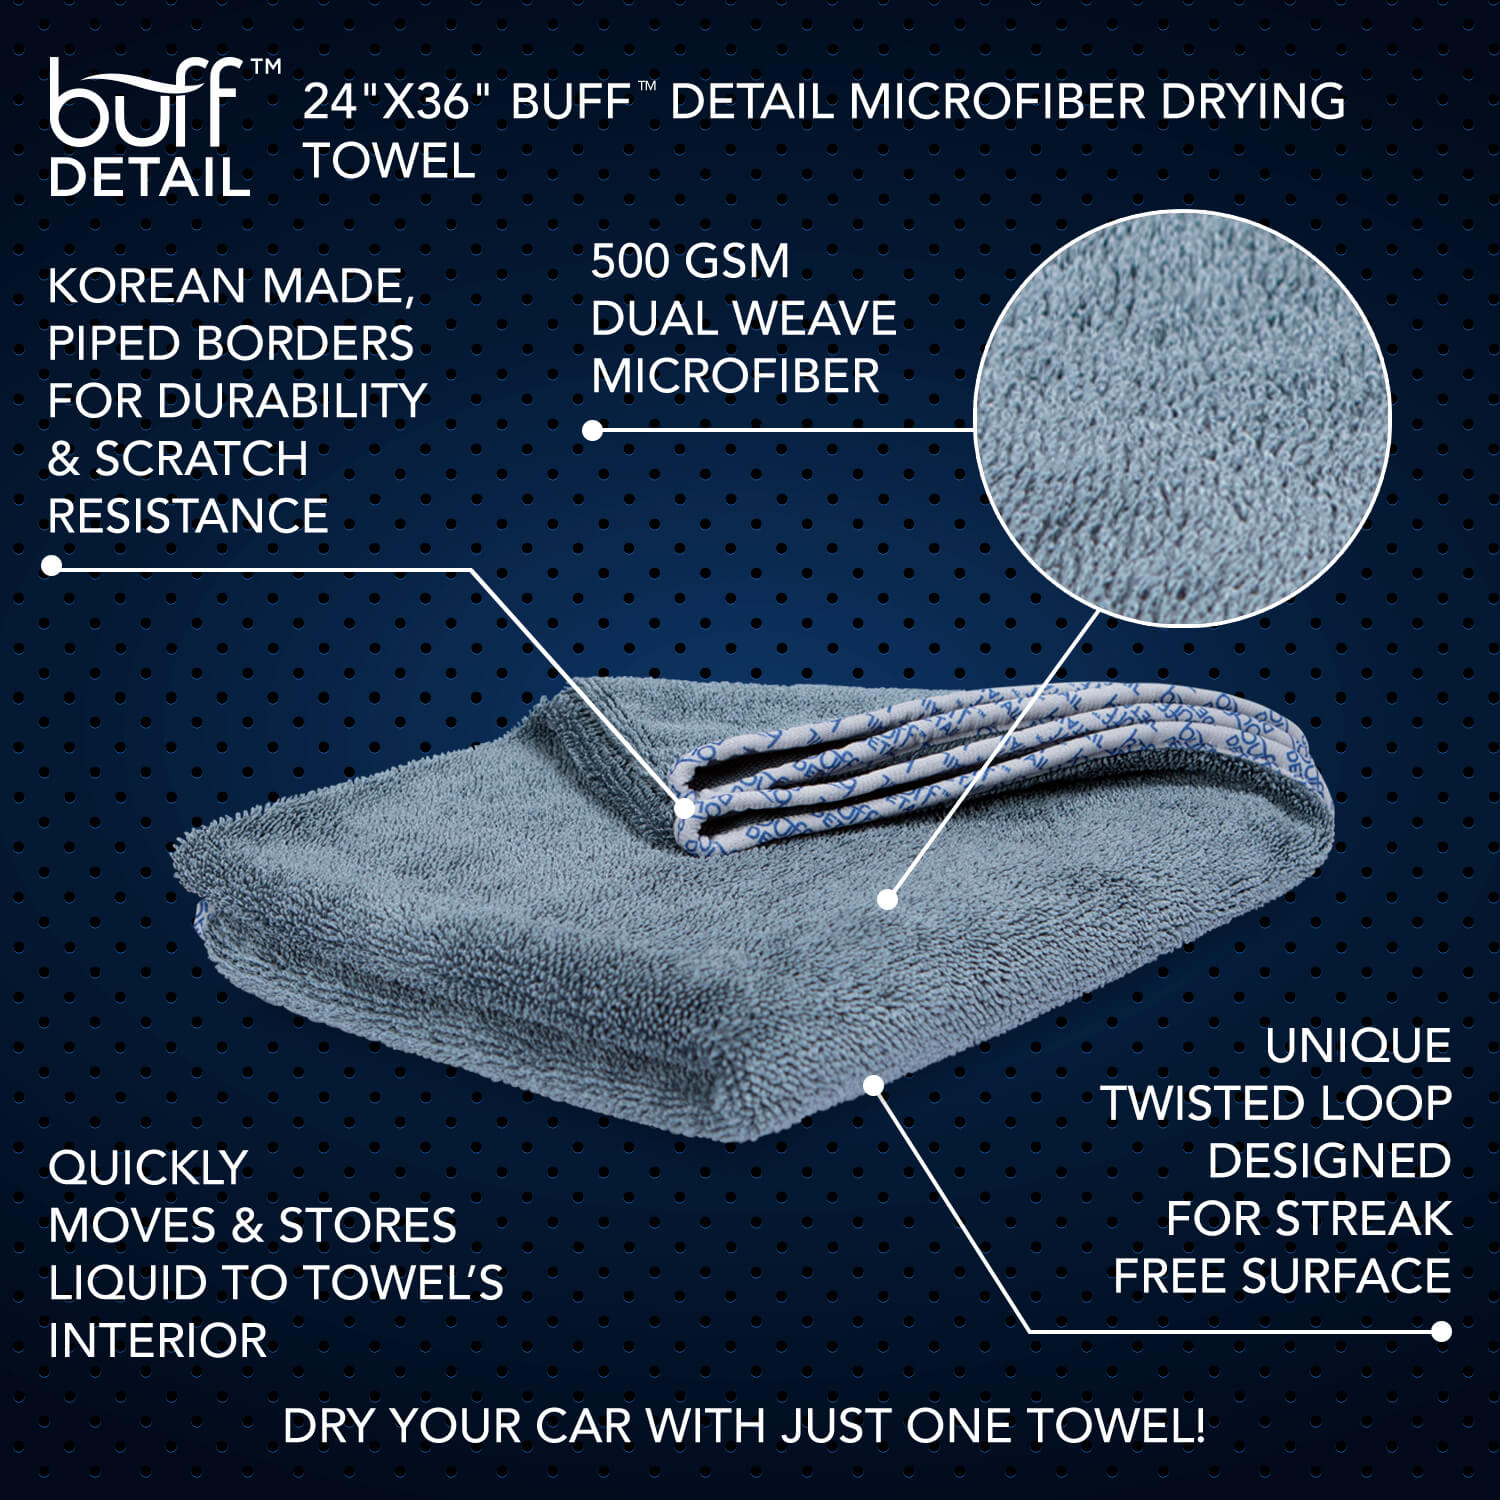 Toalla de microfibra para secado Buff™ Detail de 24" x 36" 